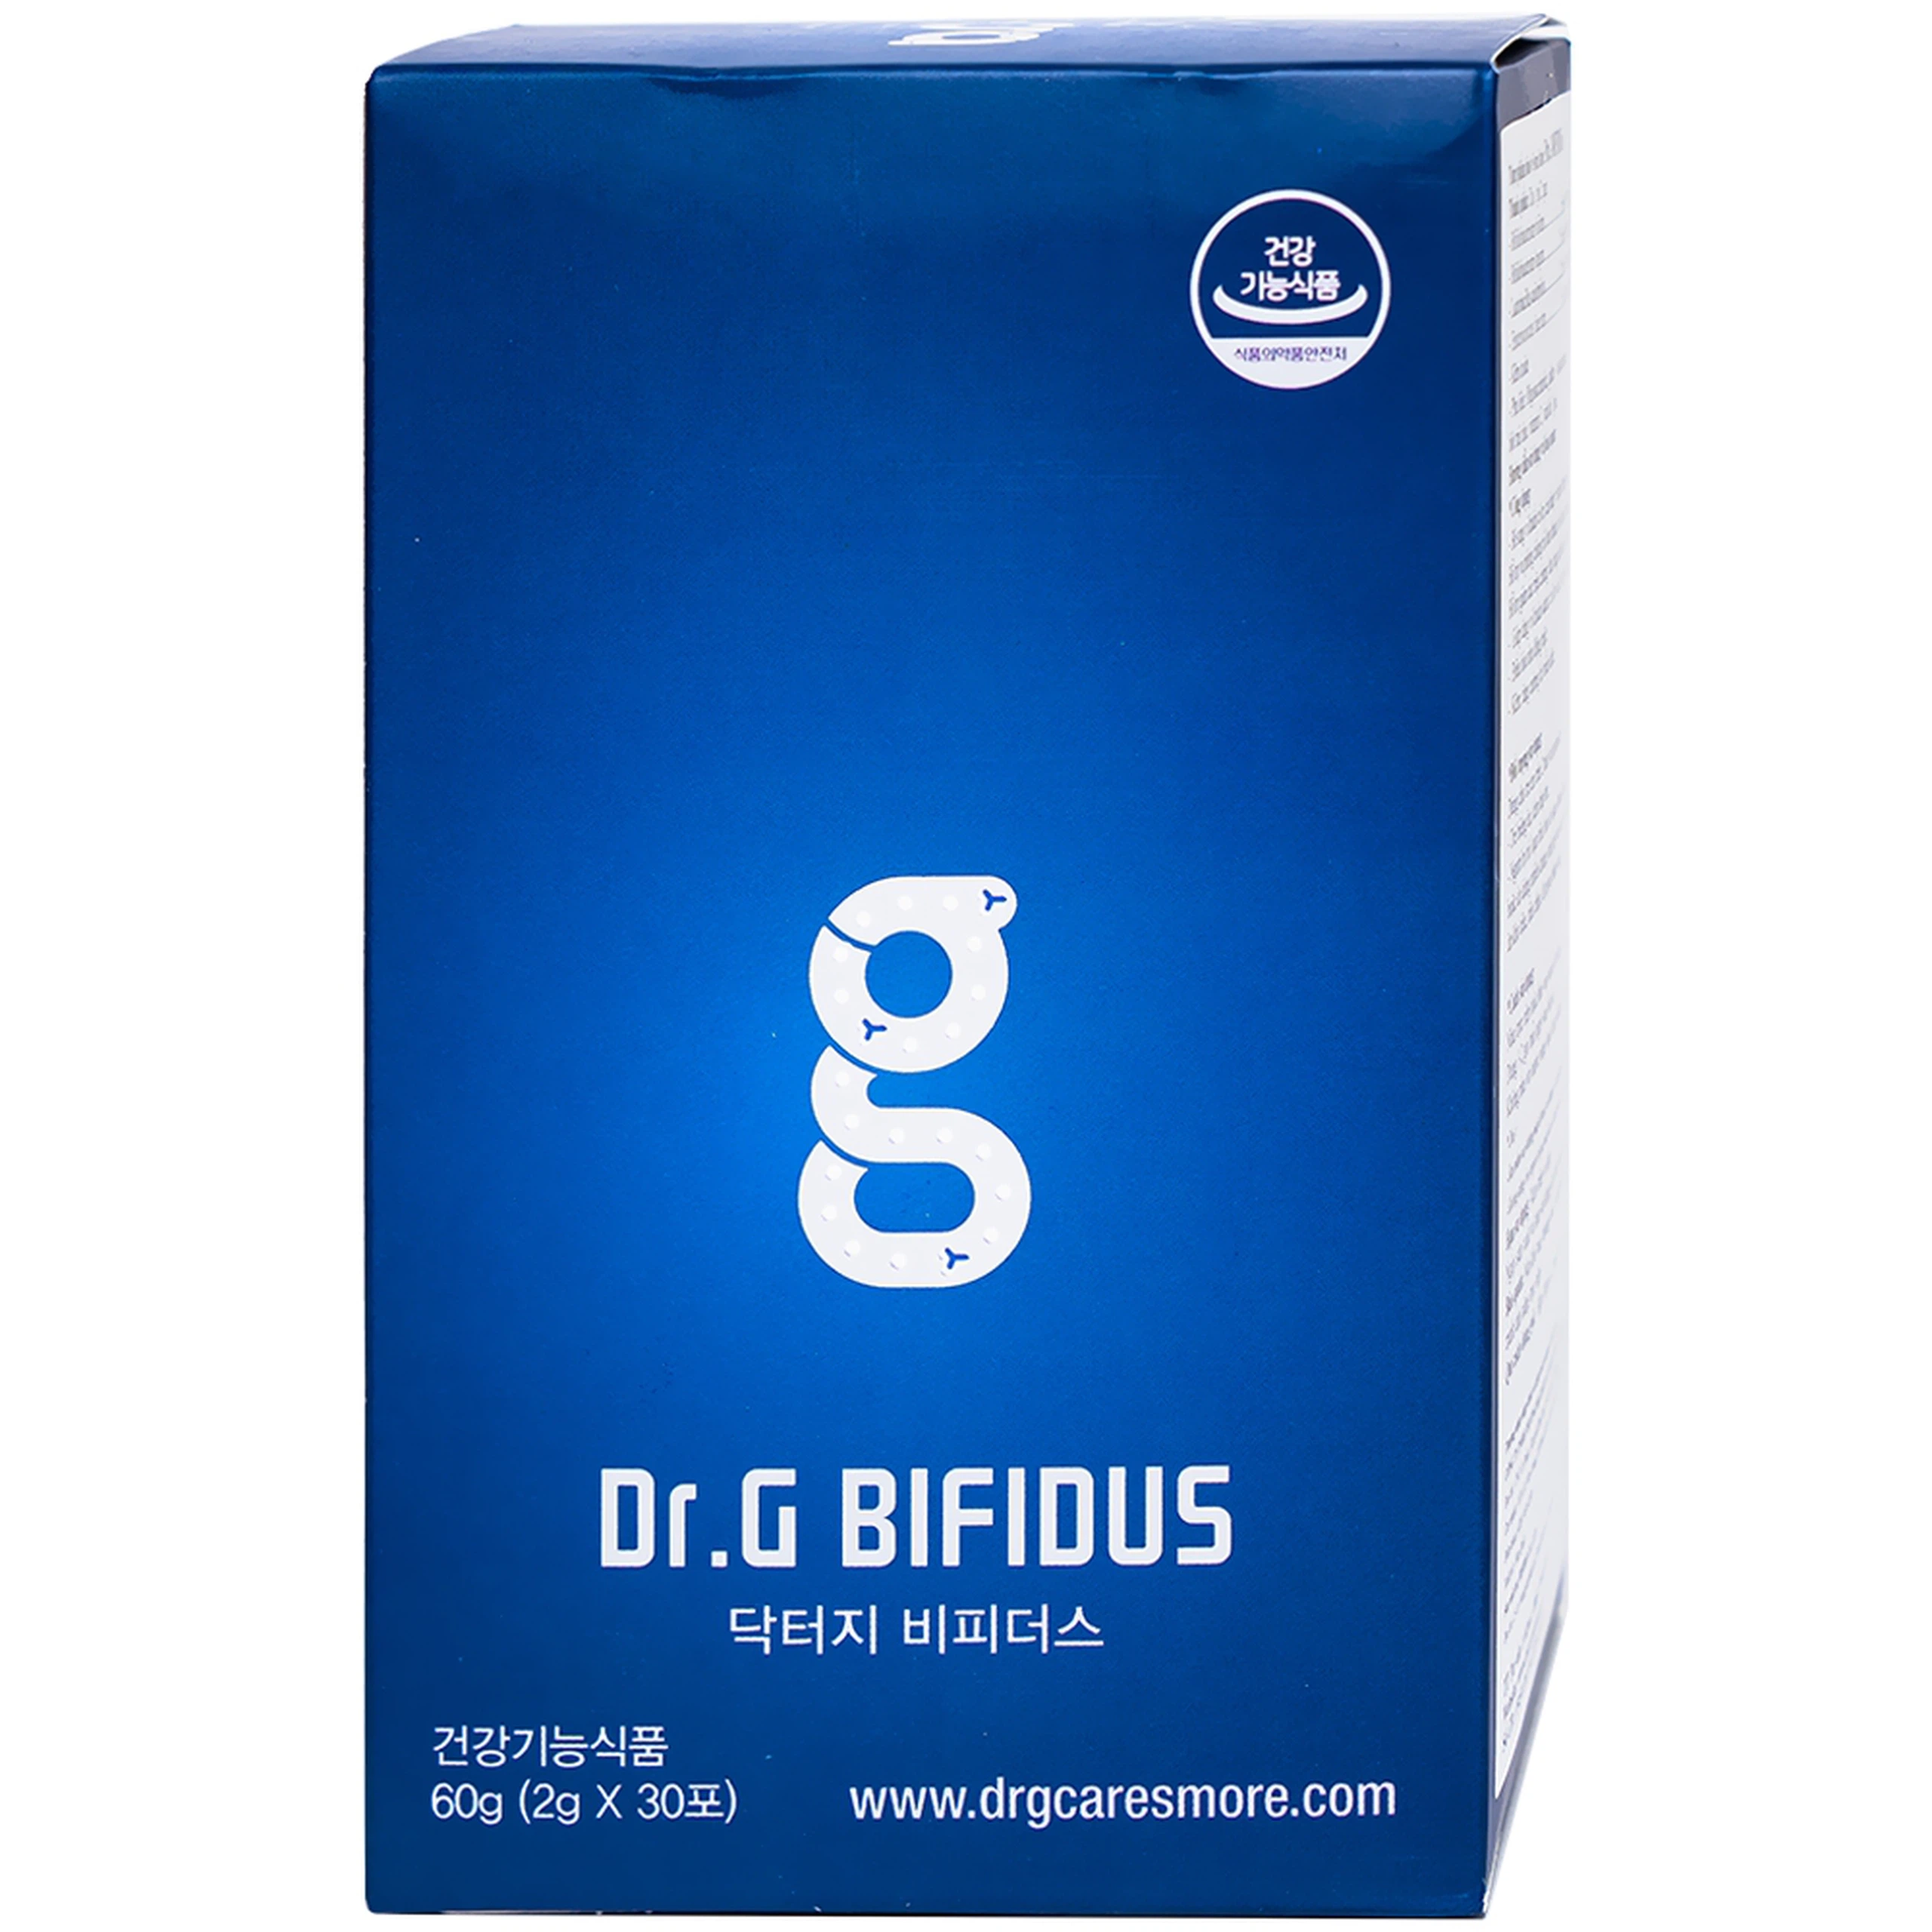 Bột Dr.G Bifidus Bifido men vi sinh hỗ trợ cải thiện hệ tiêu hóa (2g x 30 gói)